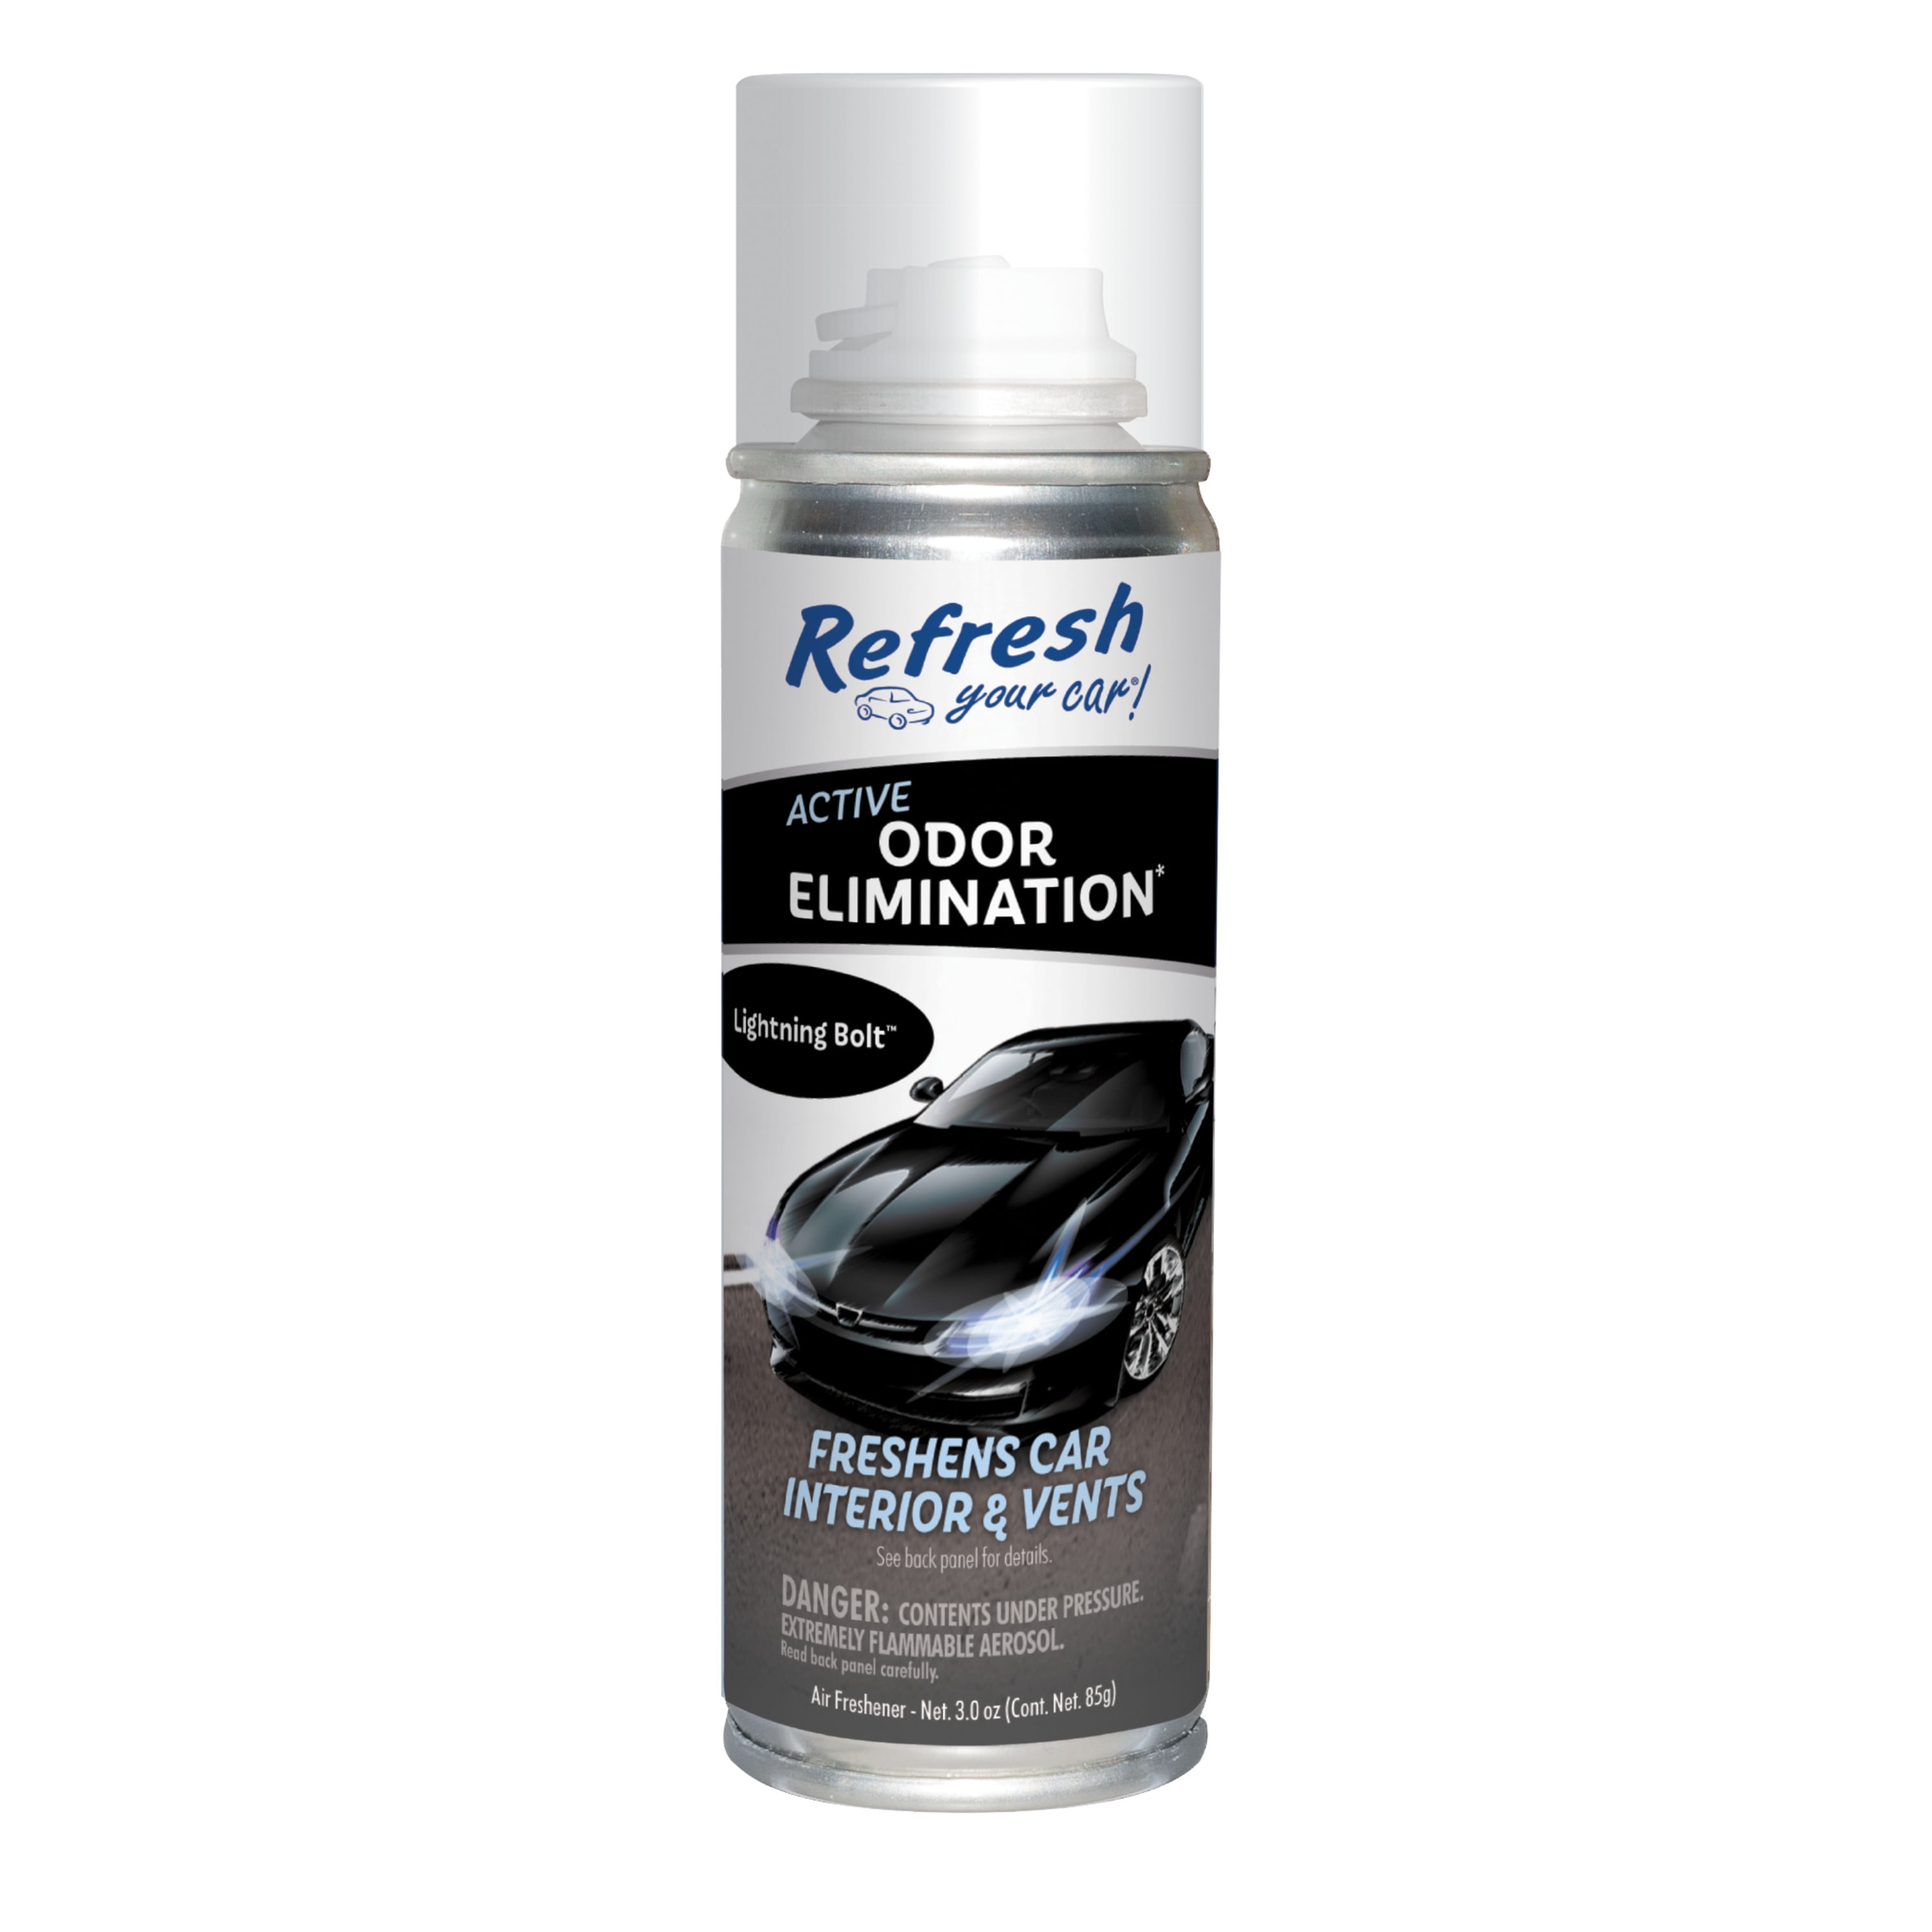 Refresh Your Car! Active Odor Elimination Fogger (Lightning Bolt Scent)